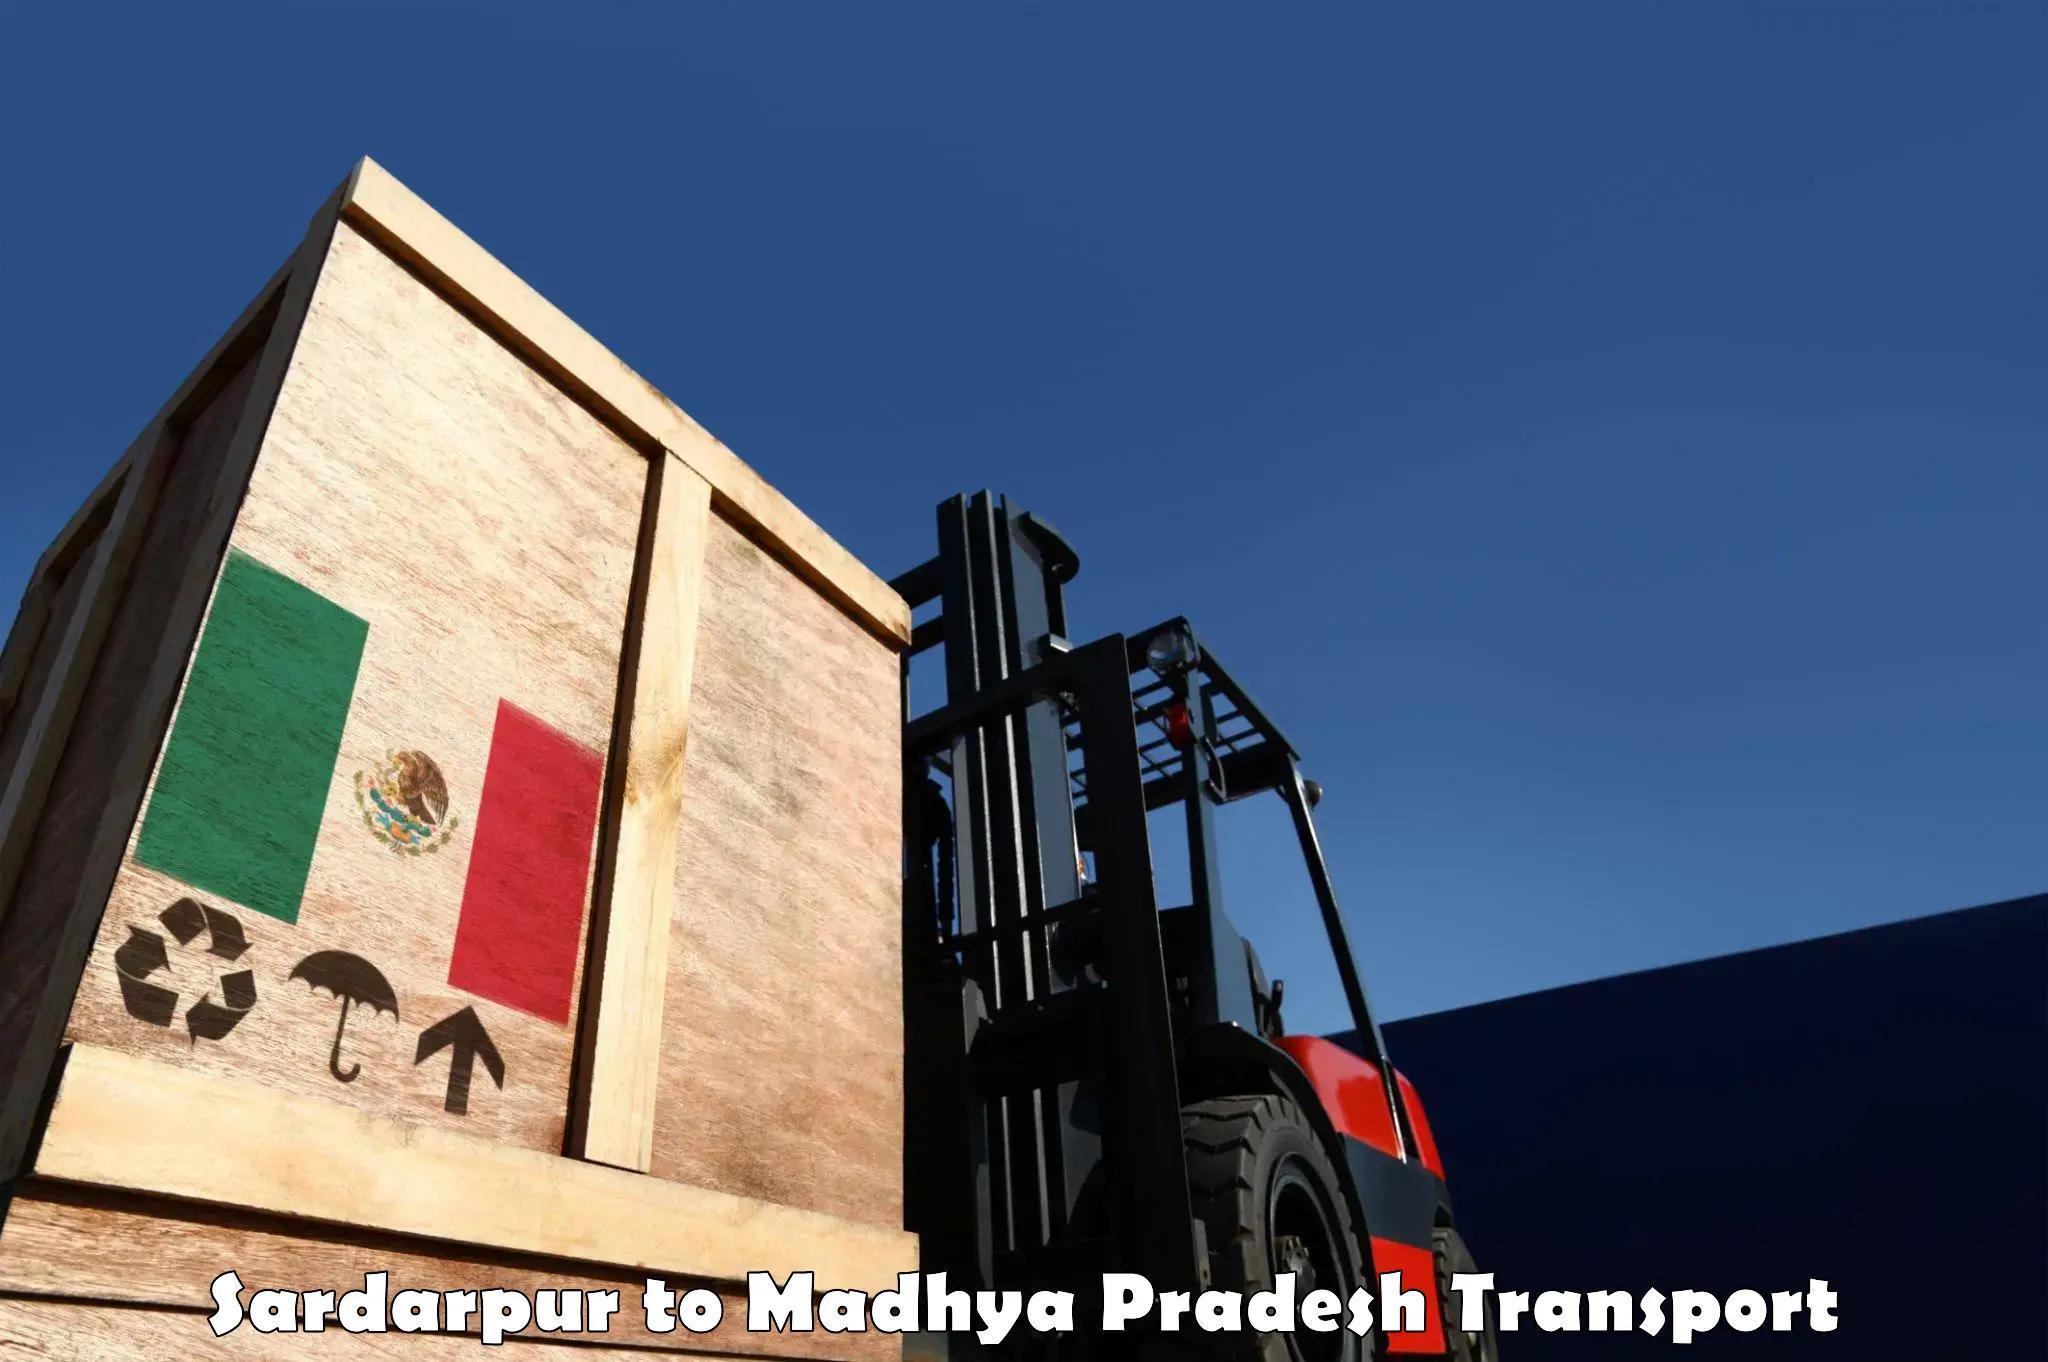 Intercity transport Sardarpur to Satna